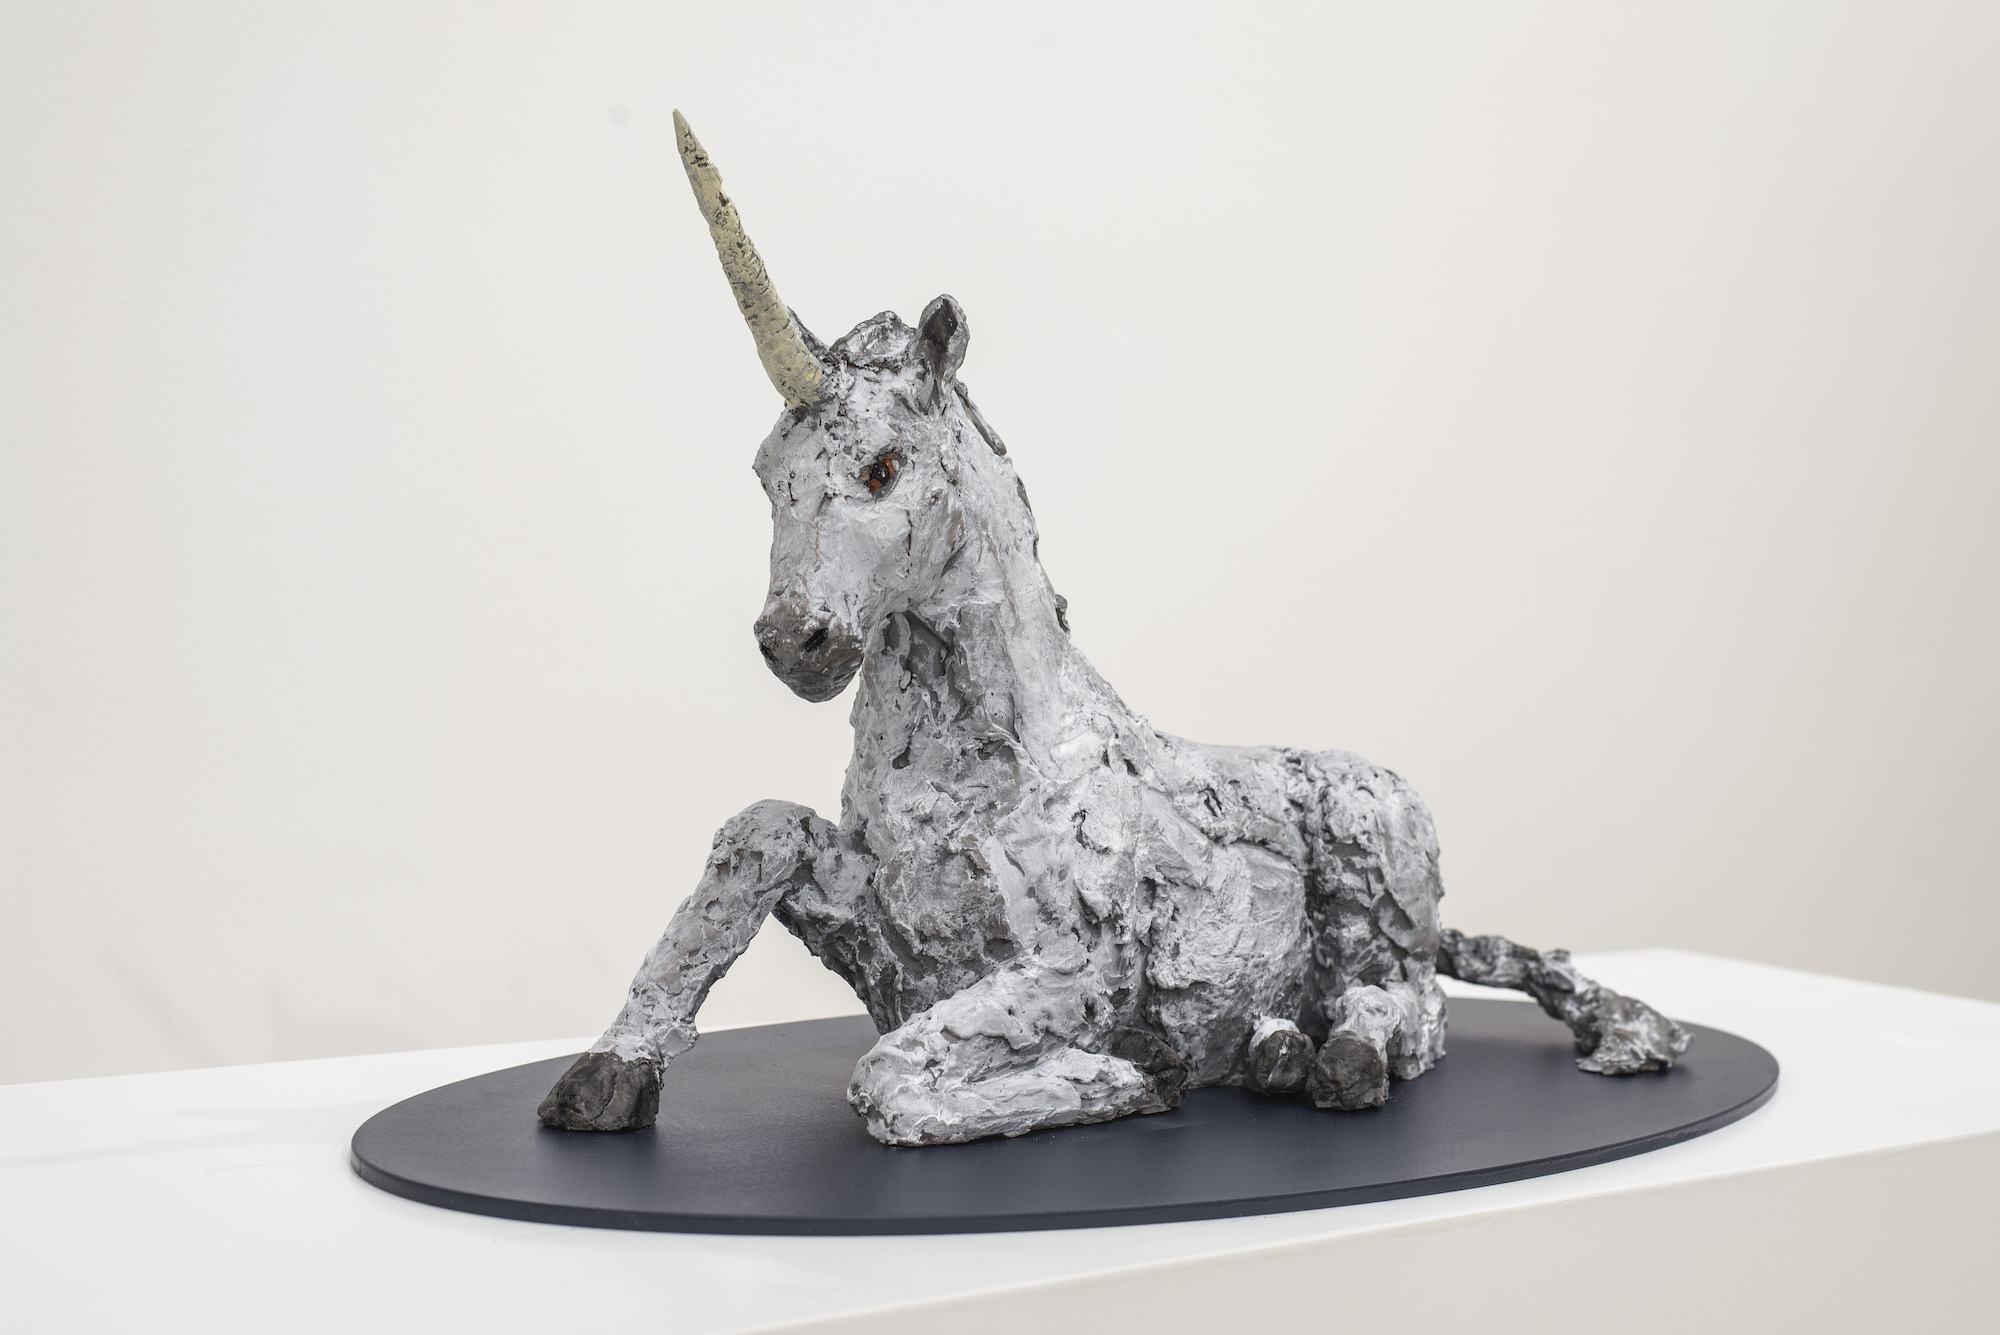 Skulptur "Einhorn" (2020) von Stephan Balkenhol